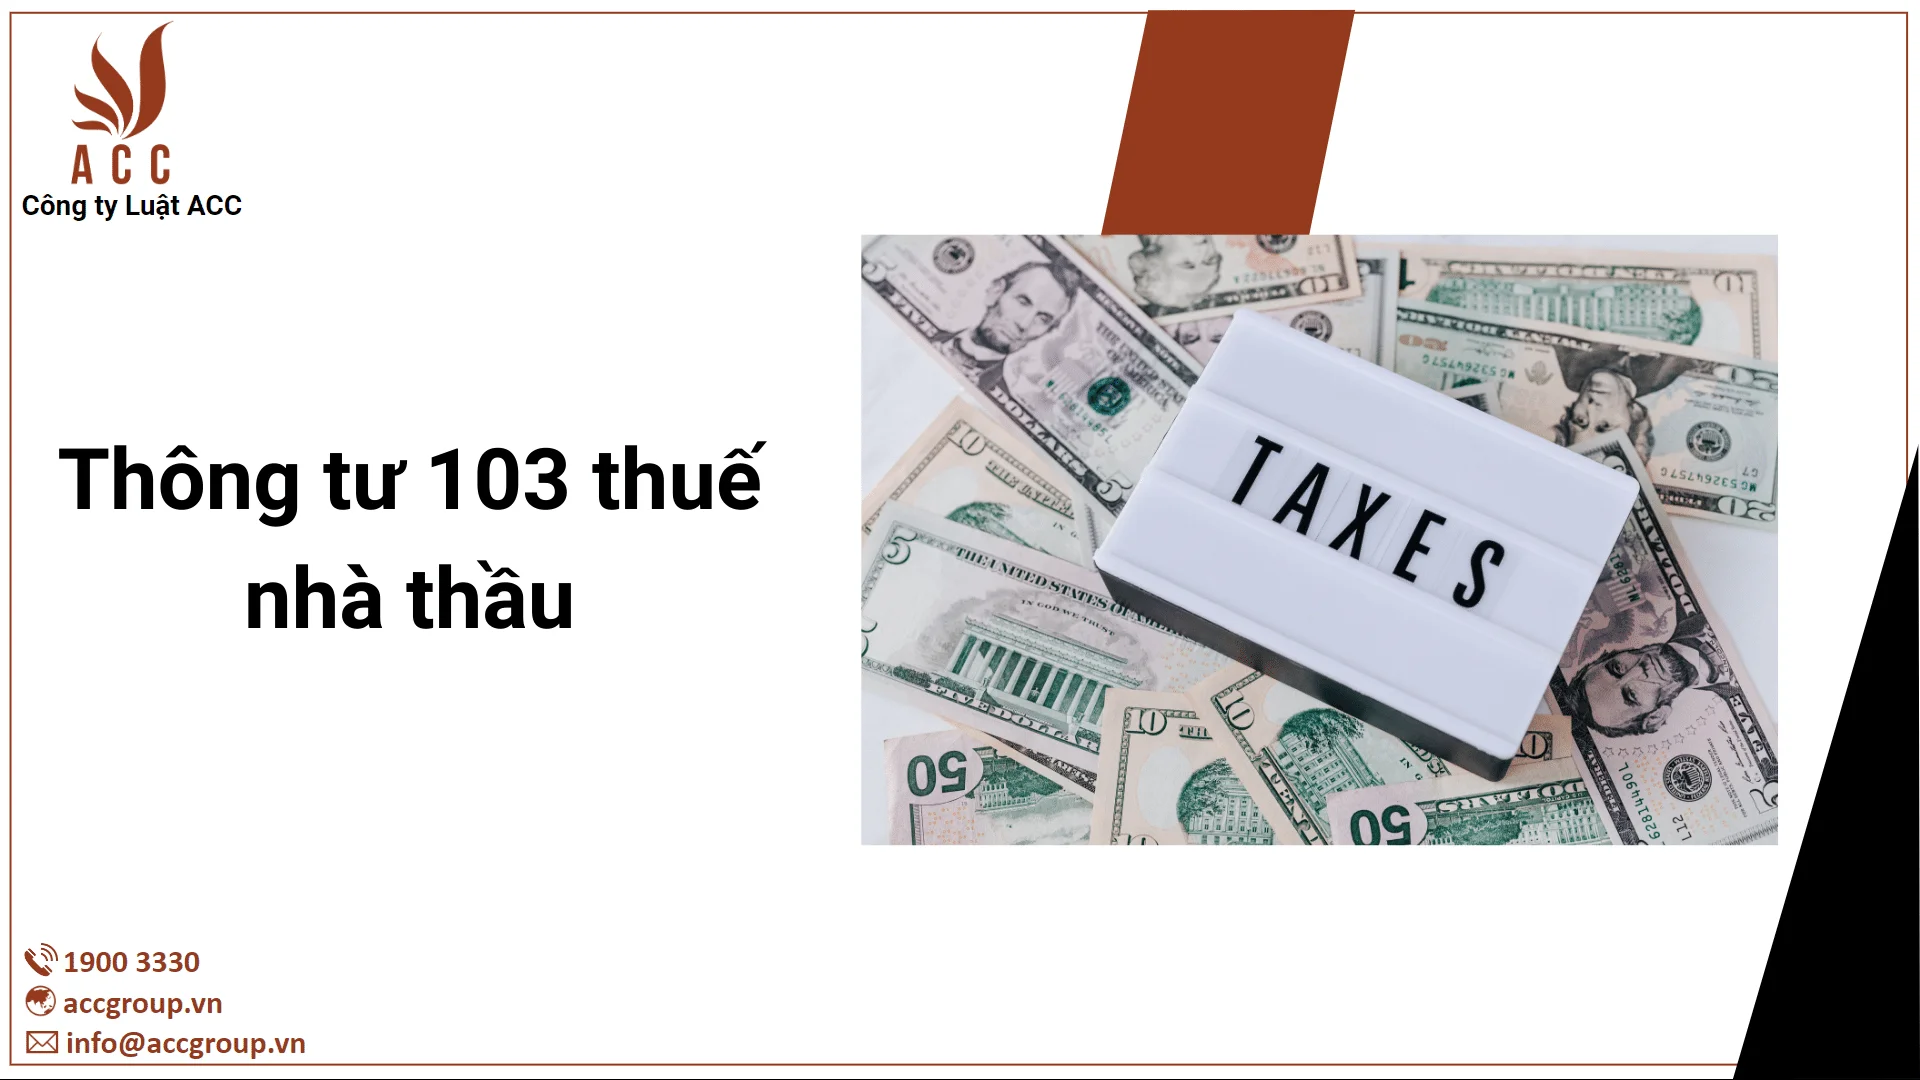 Thông tư 103 thuế nhà thầu